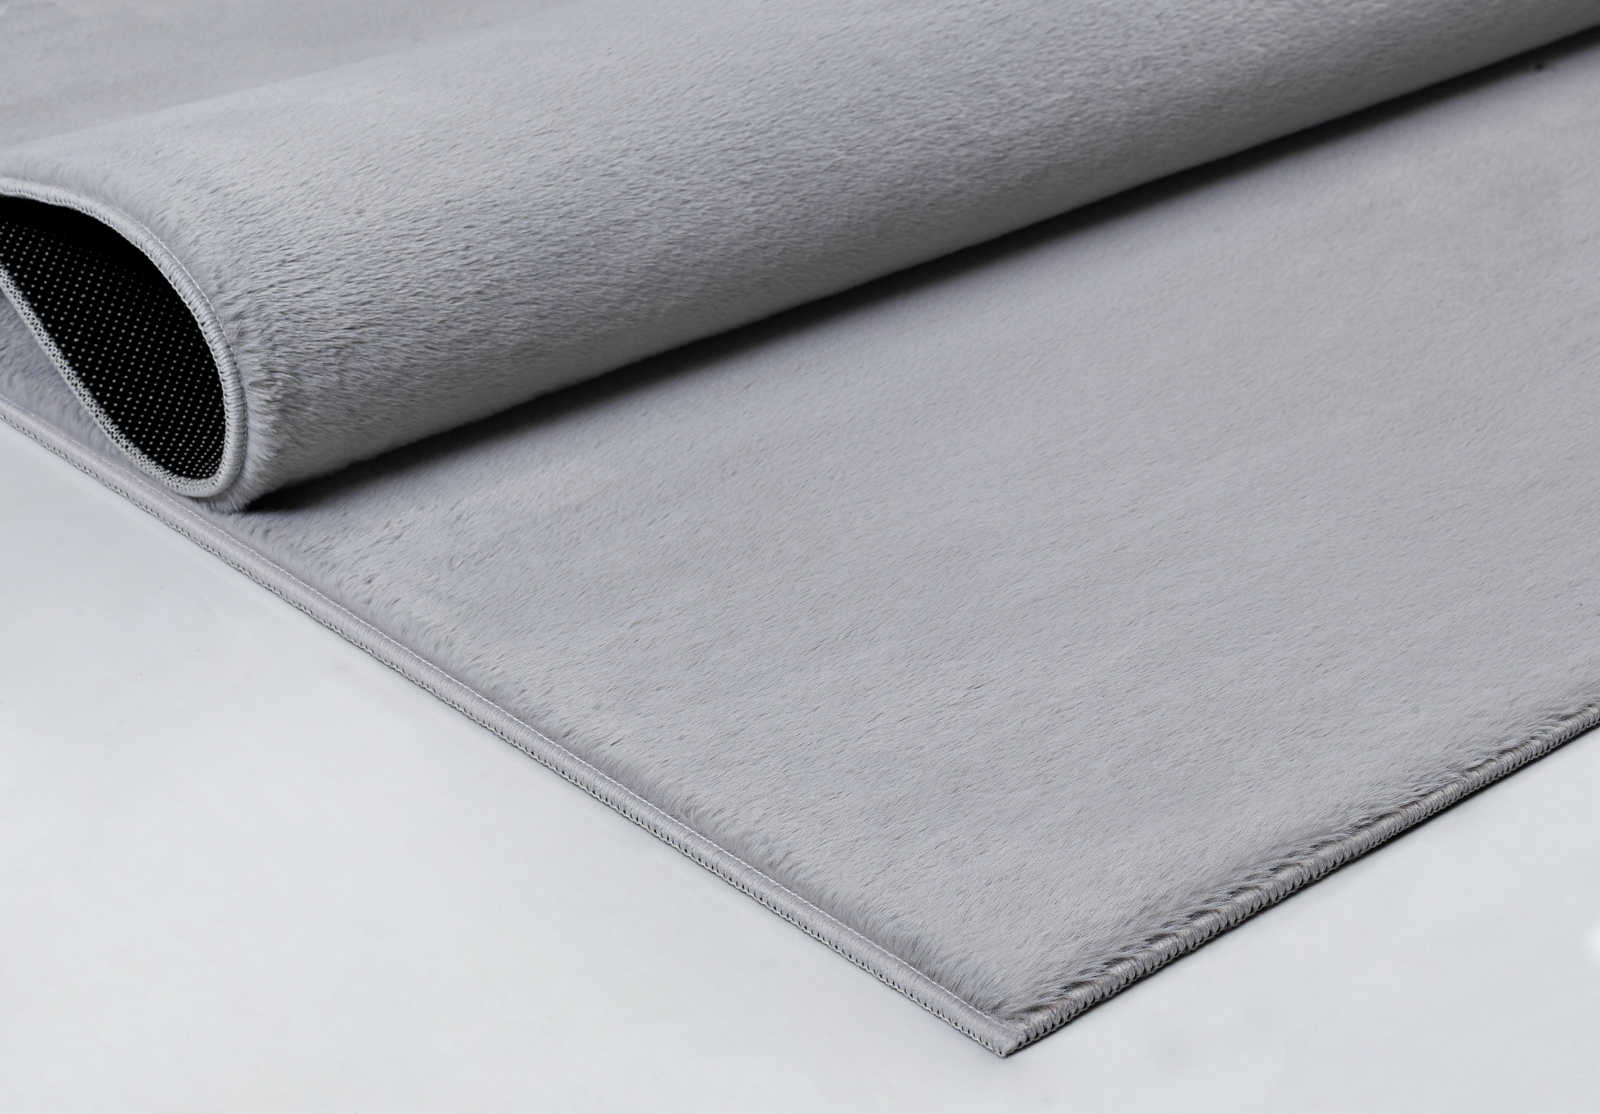             Angenehmer Hochflor Teppich in sanften Grau – 140 x 70 cm
        